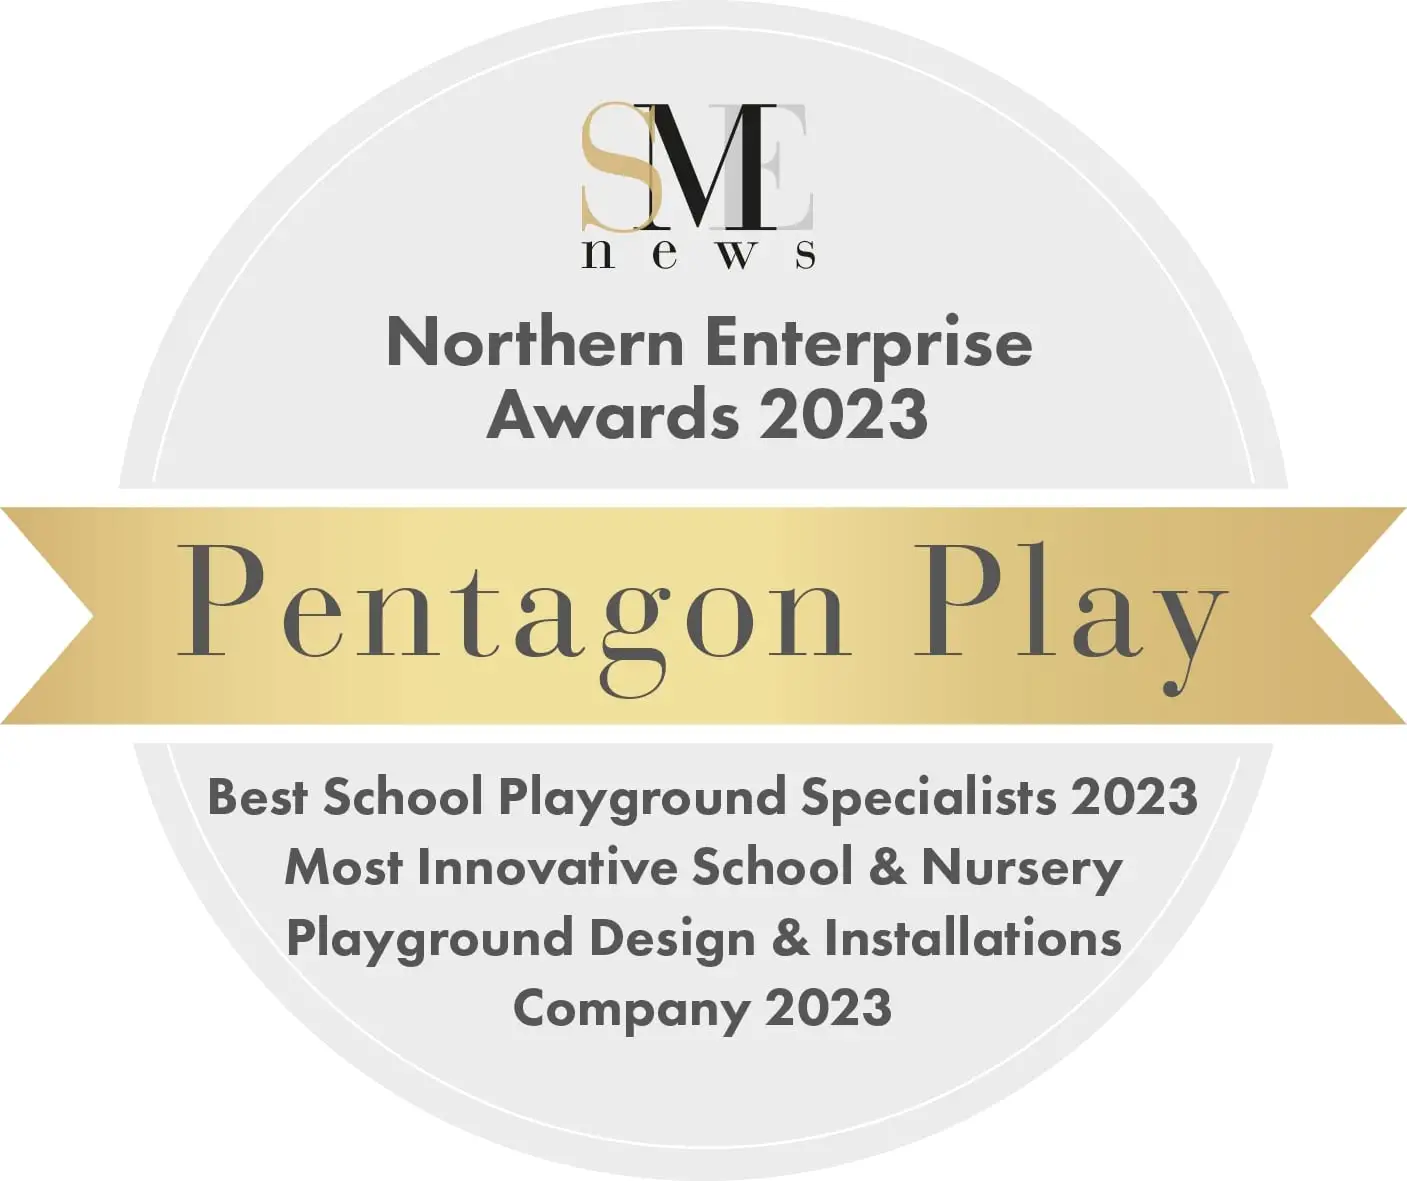 Winner of Northern Enterprise Awards for Best School Playground Specialist 2023